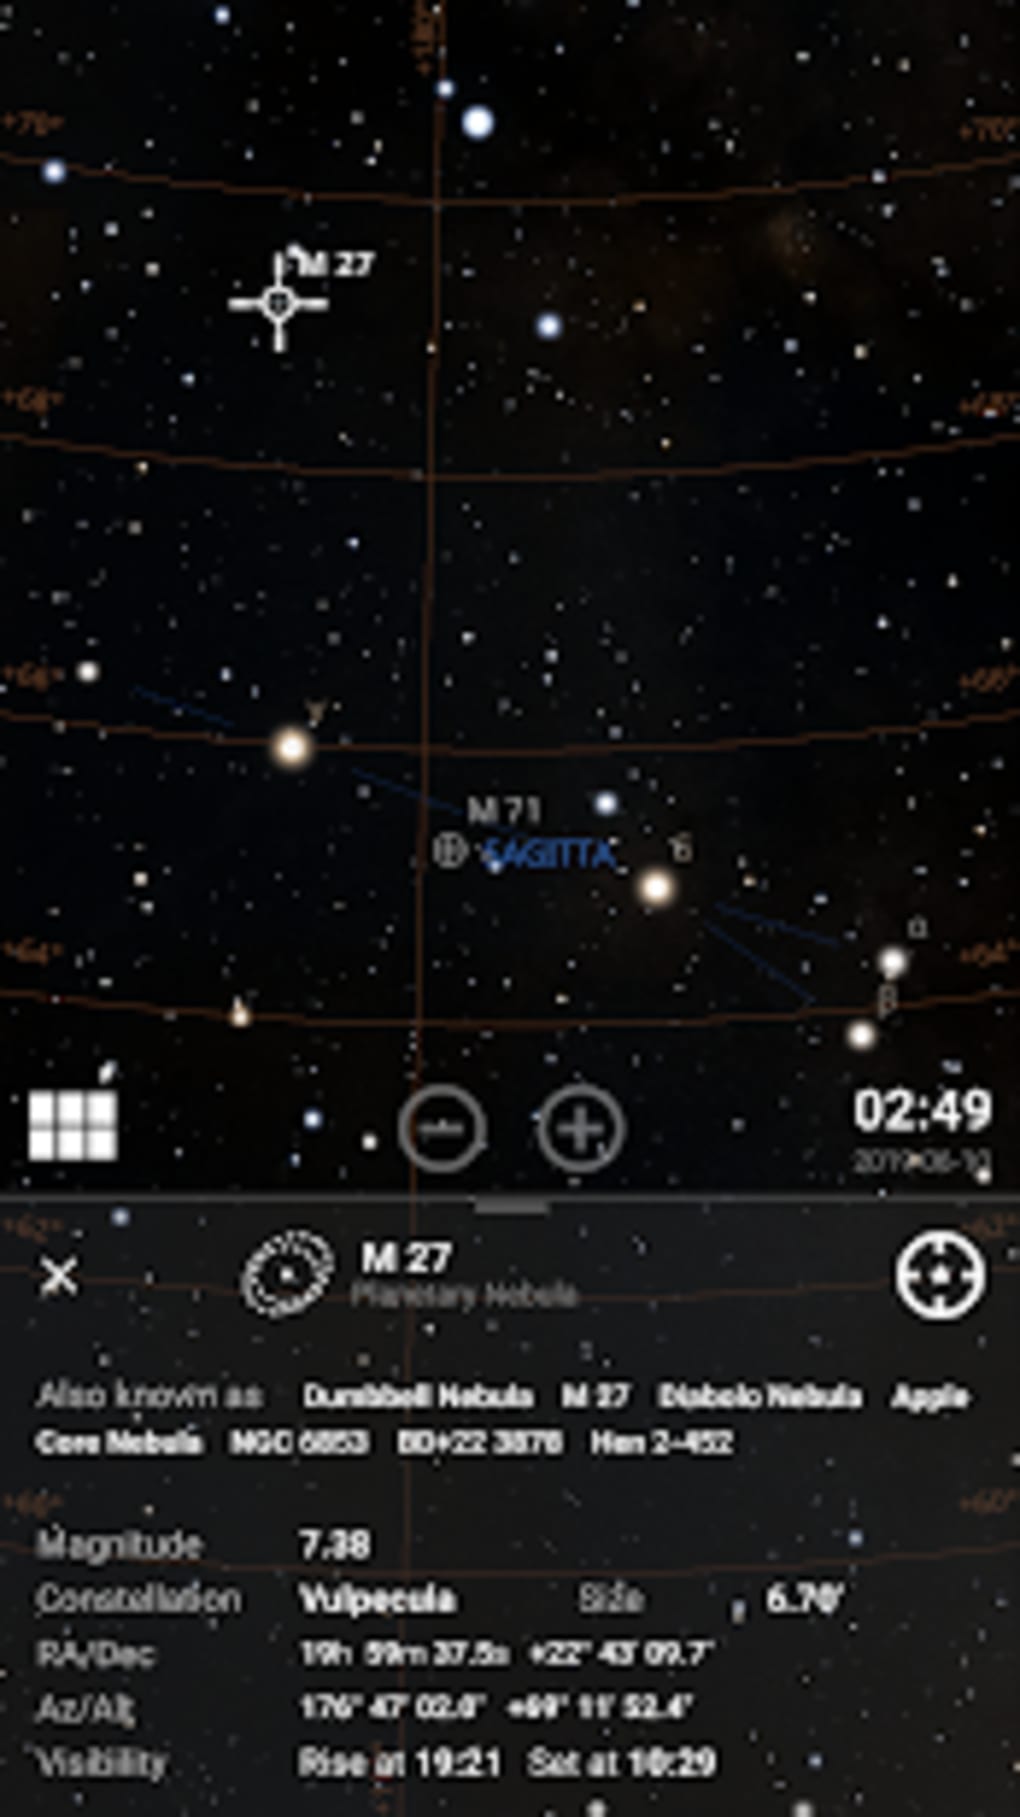 stellarium plus mobile app